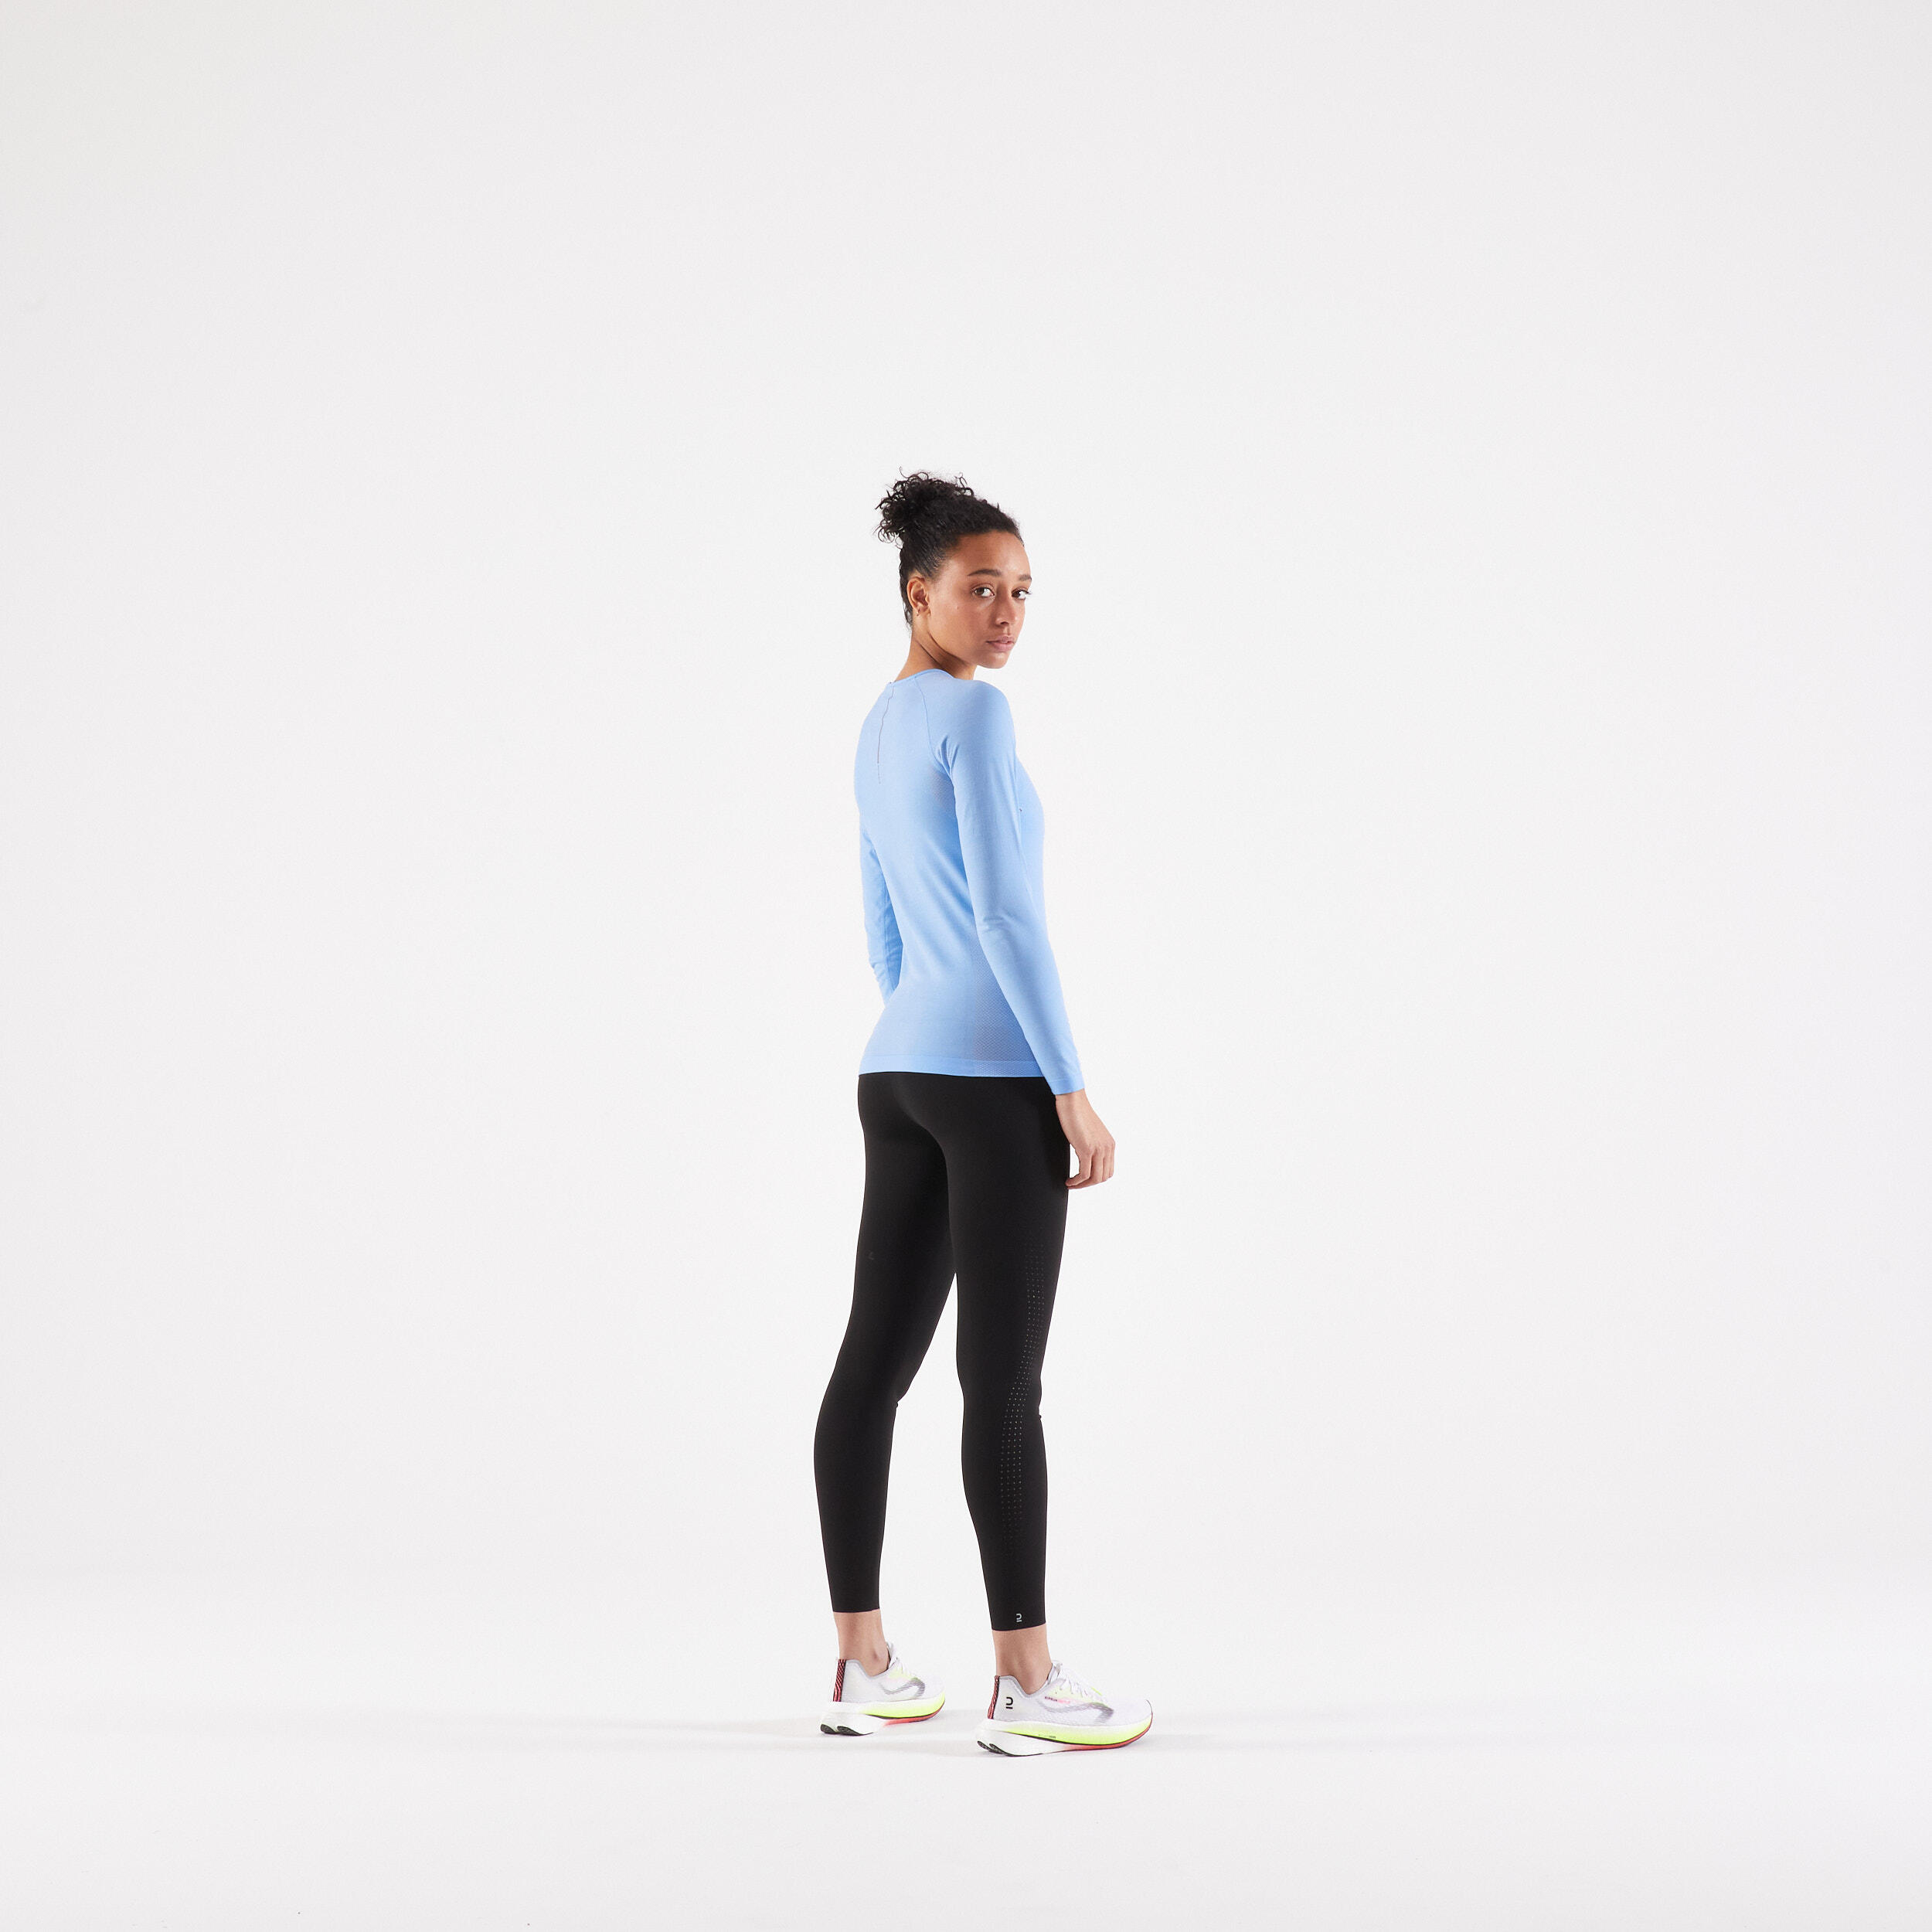 Women's short running leggings Support - black - Decathlon